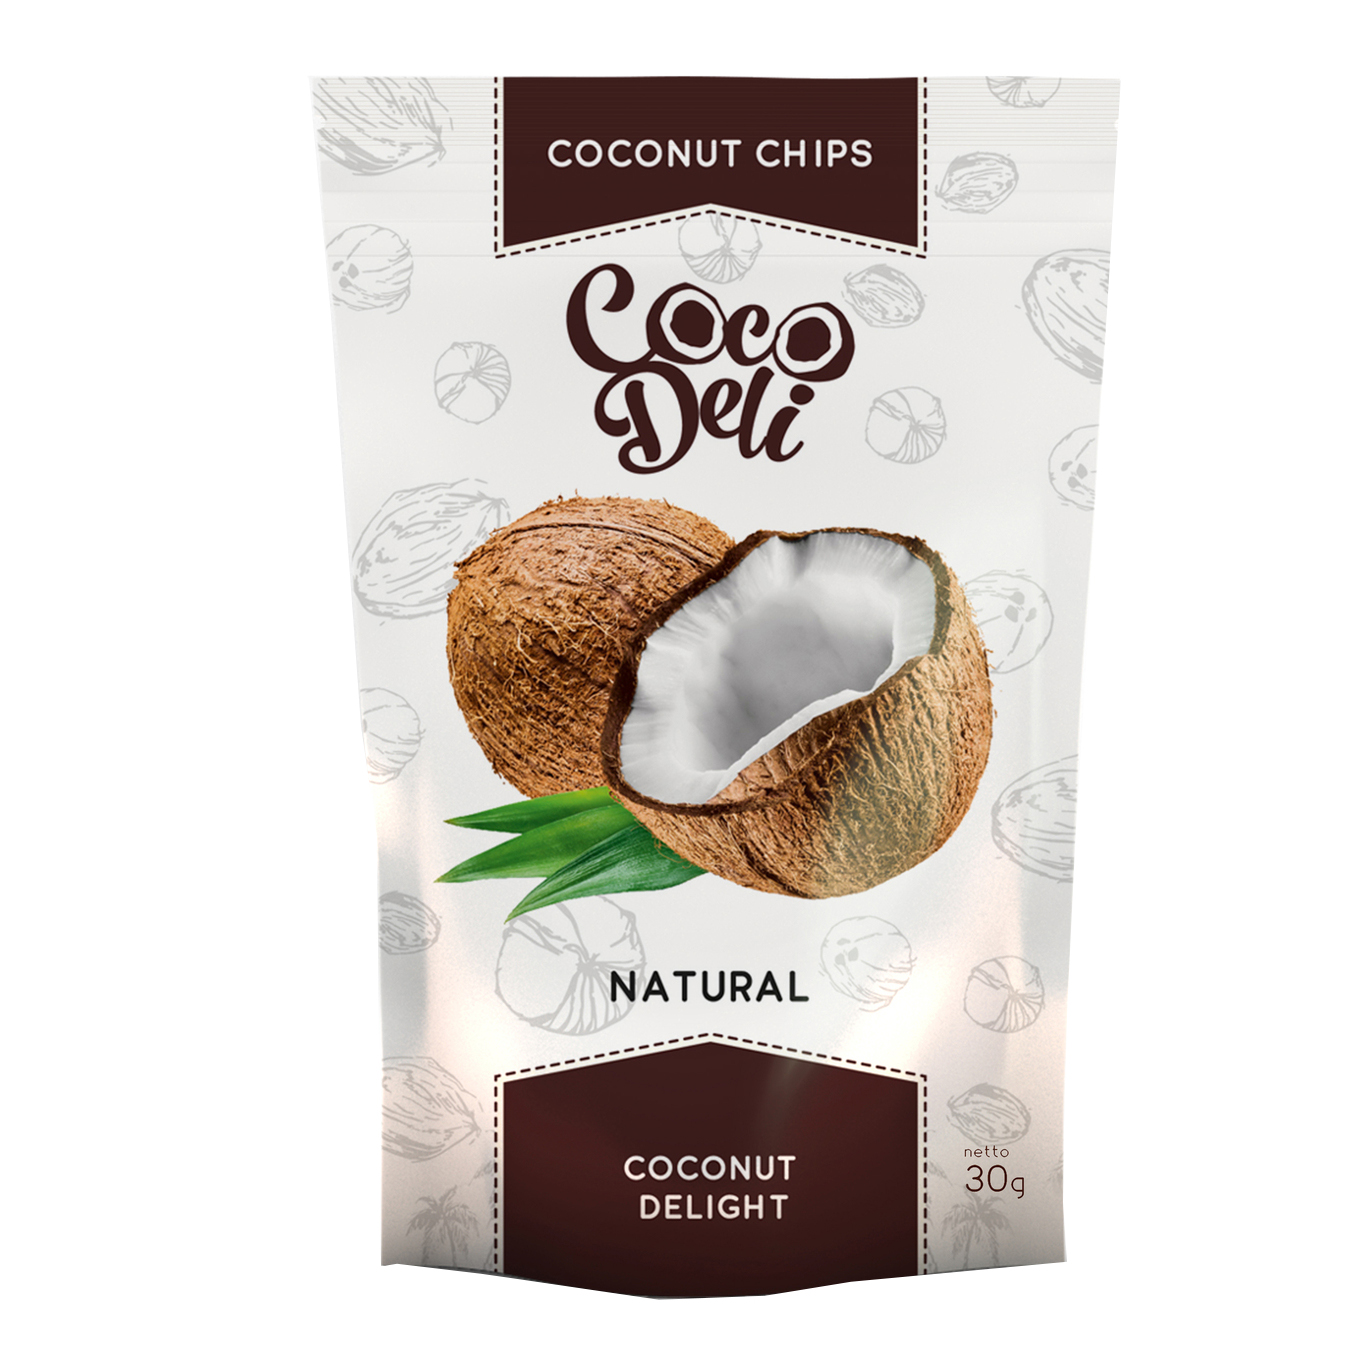 Coconut chips Coco Deli neutral 30g